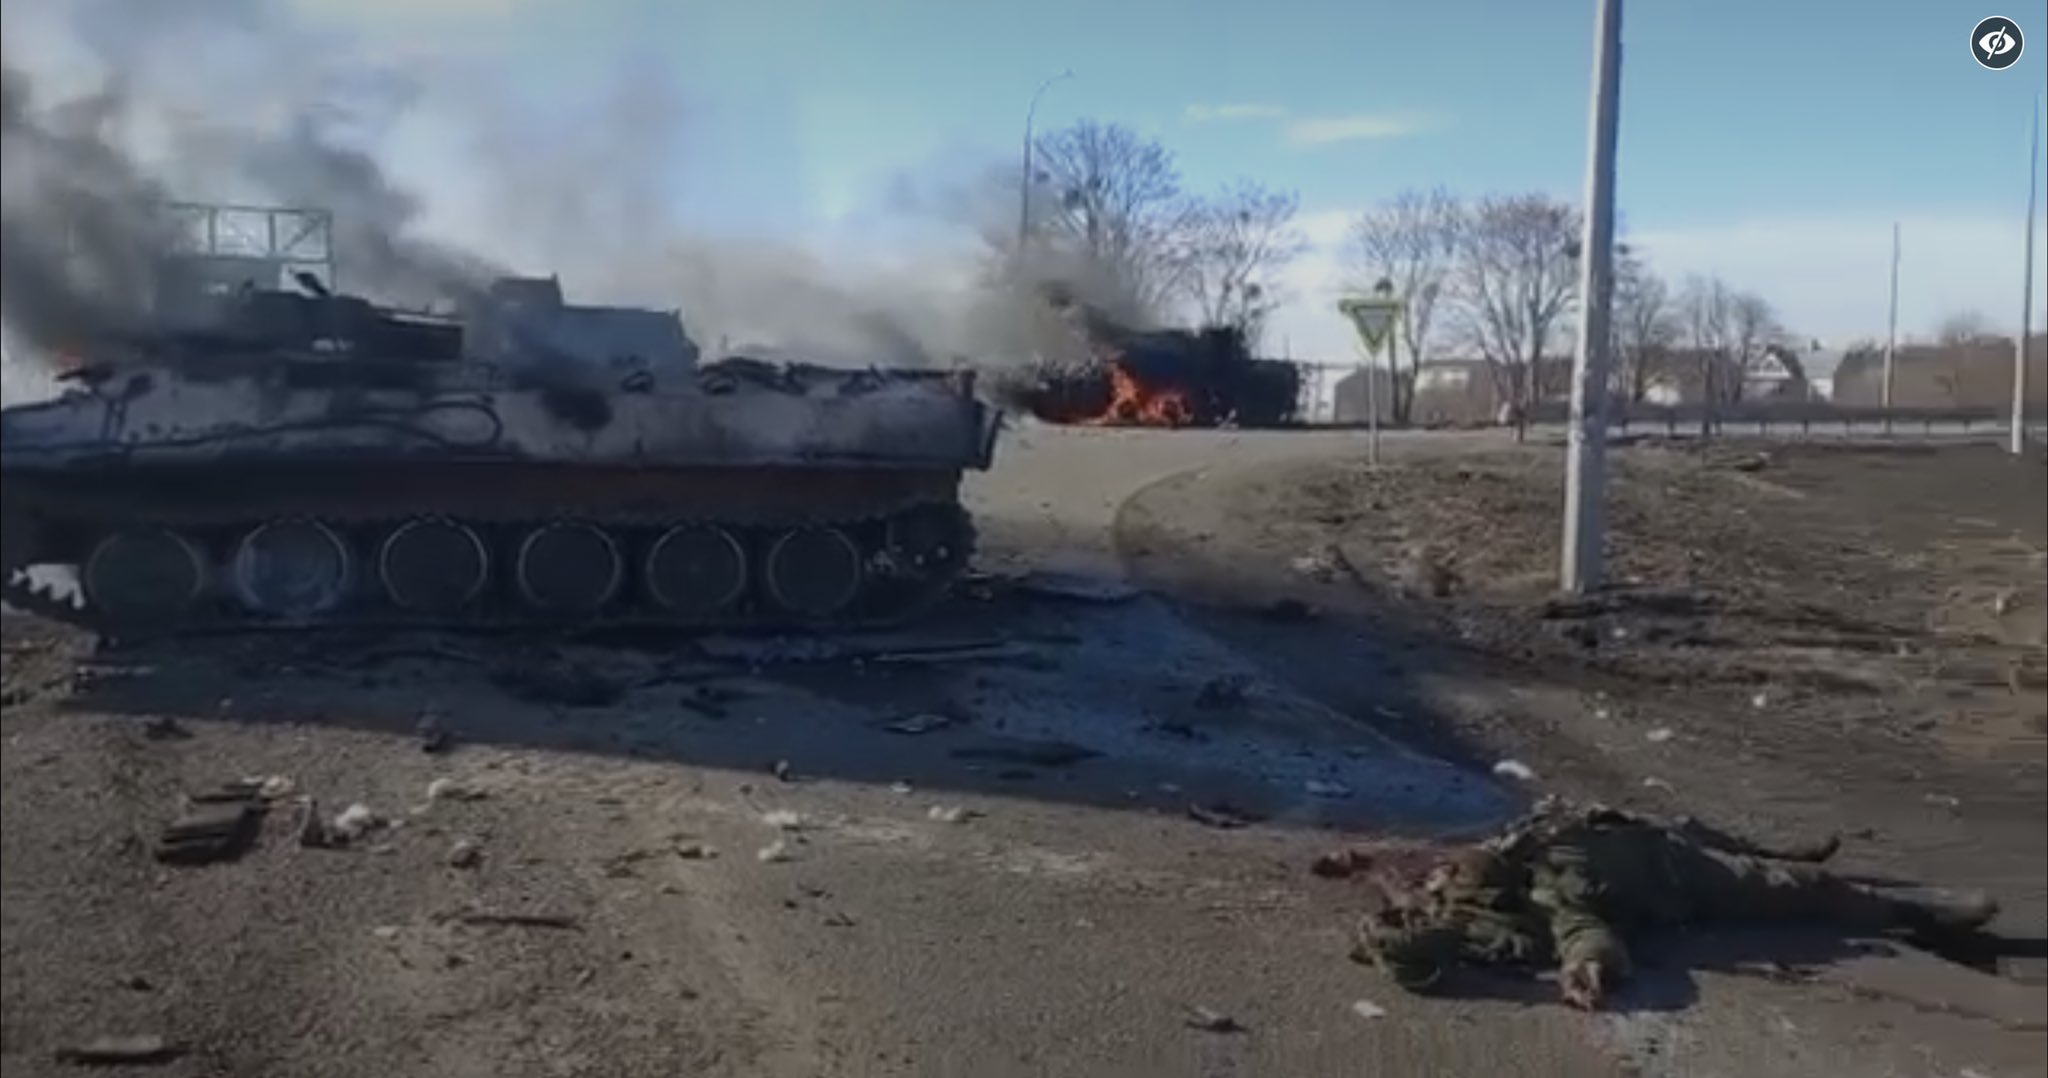 Видео снятое хохлами. Подбитая бронетехника России в Украине.